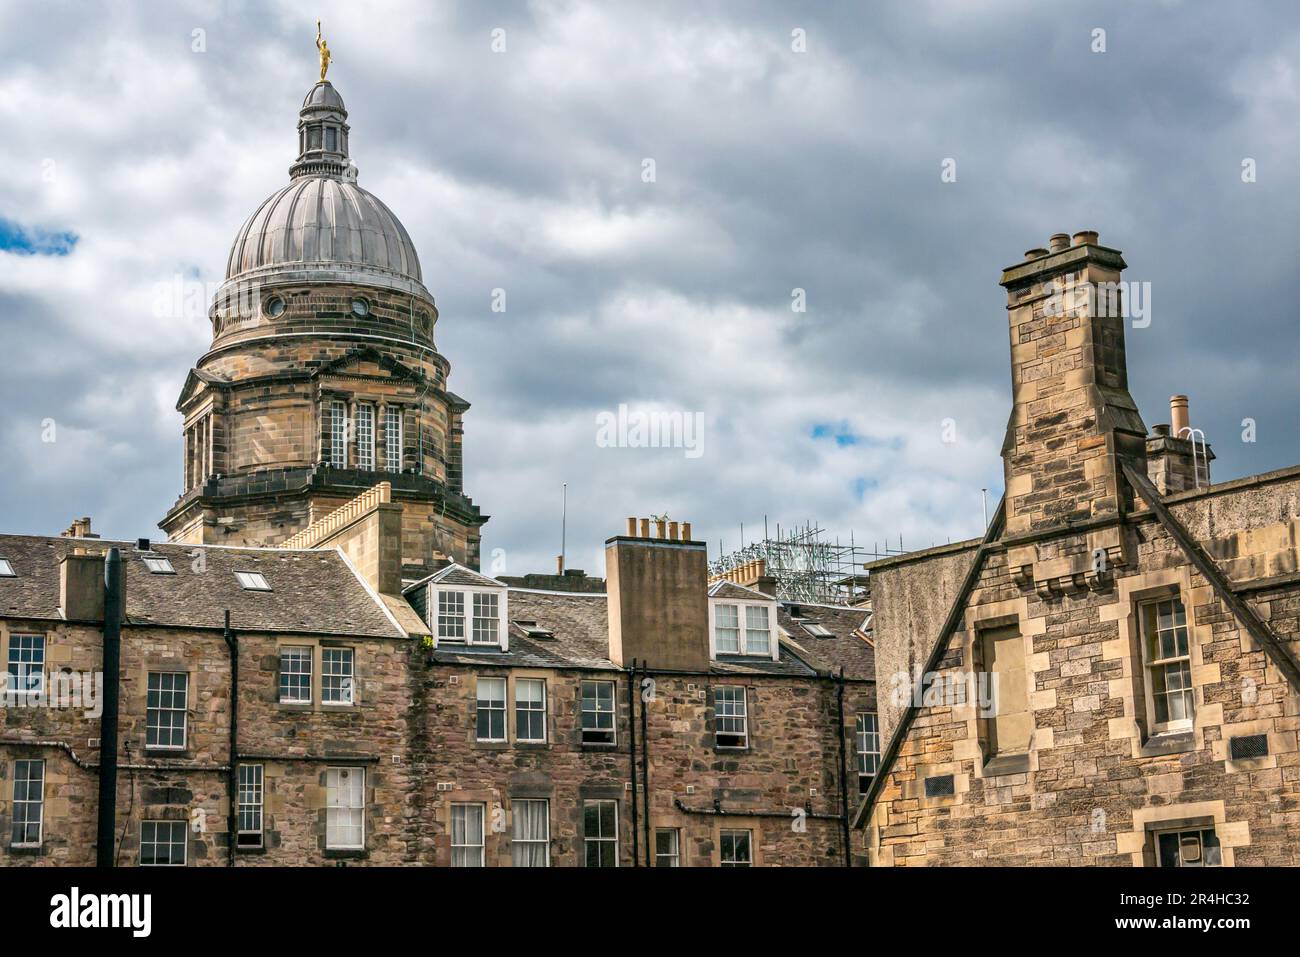 Haut en dôme du Old College, Université d'Édimbourg avec la figure de la statue ornementale dorée de la jeunesse, bâtiments de construction, Écosse, Royaume-Uni Banque D'Images